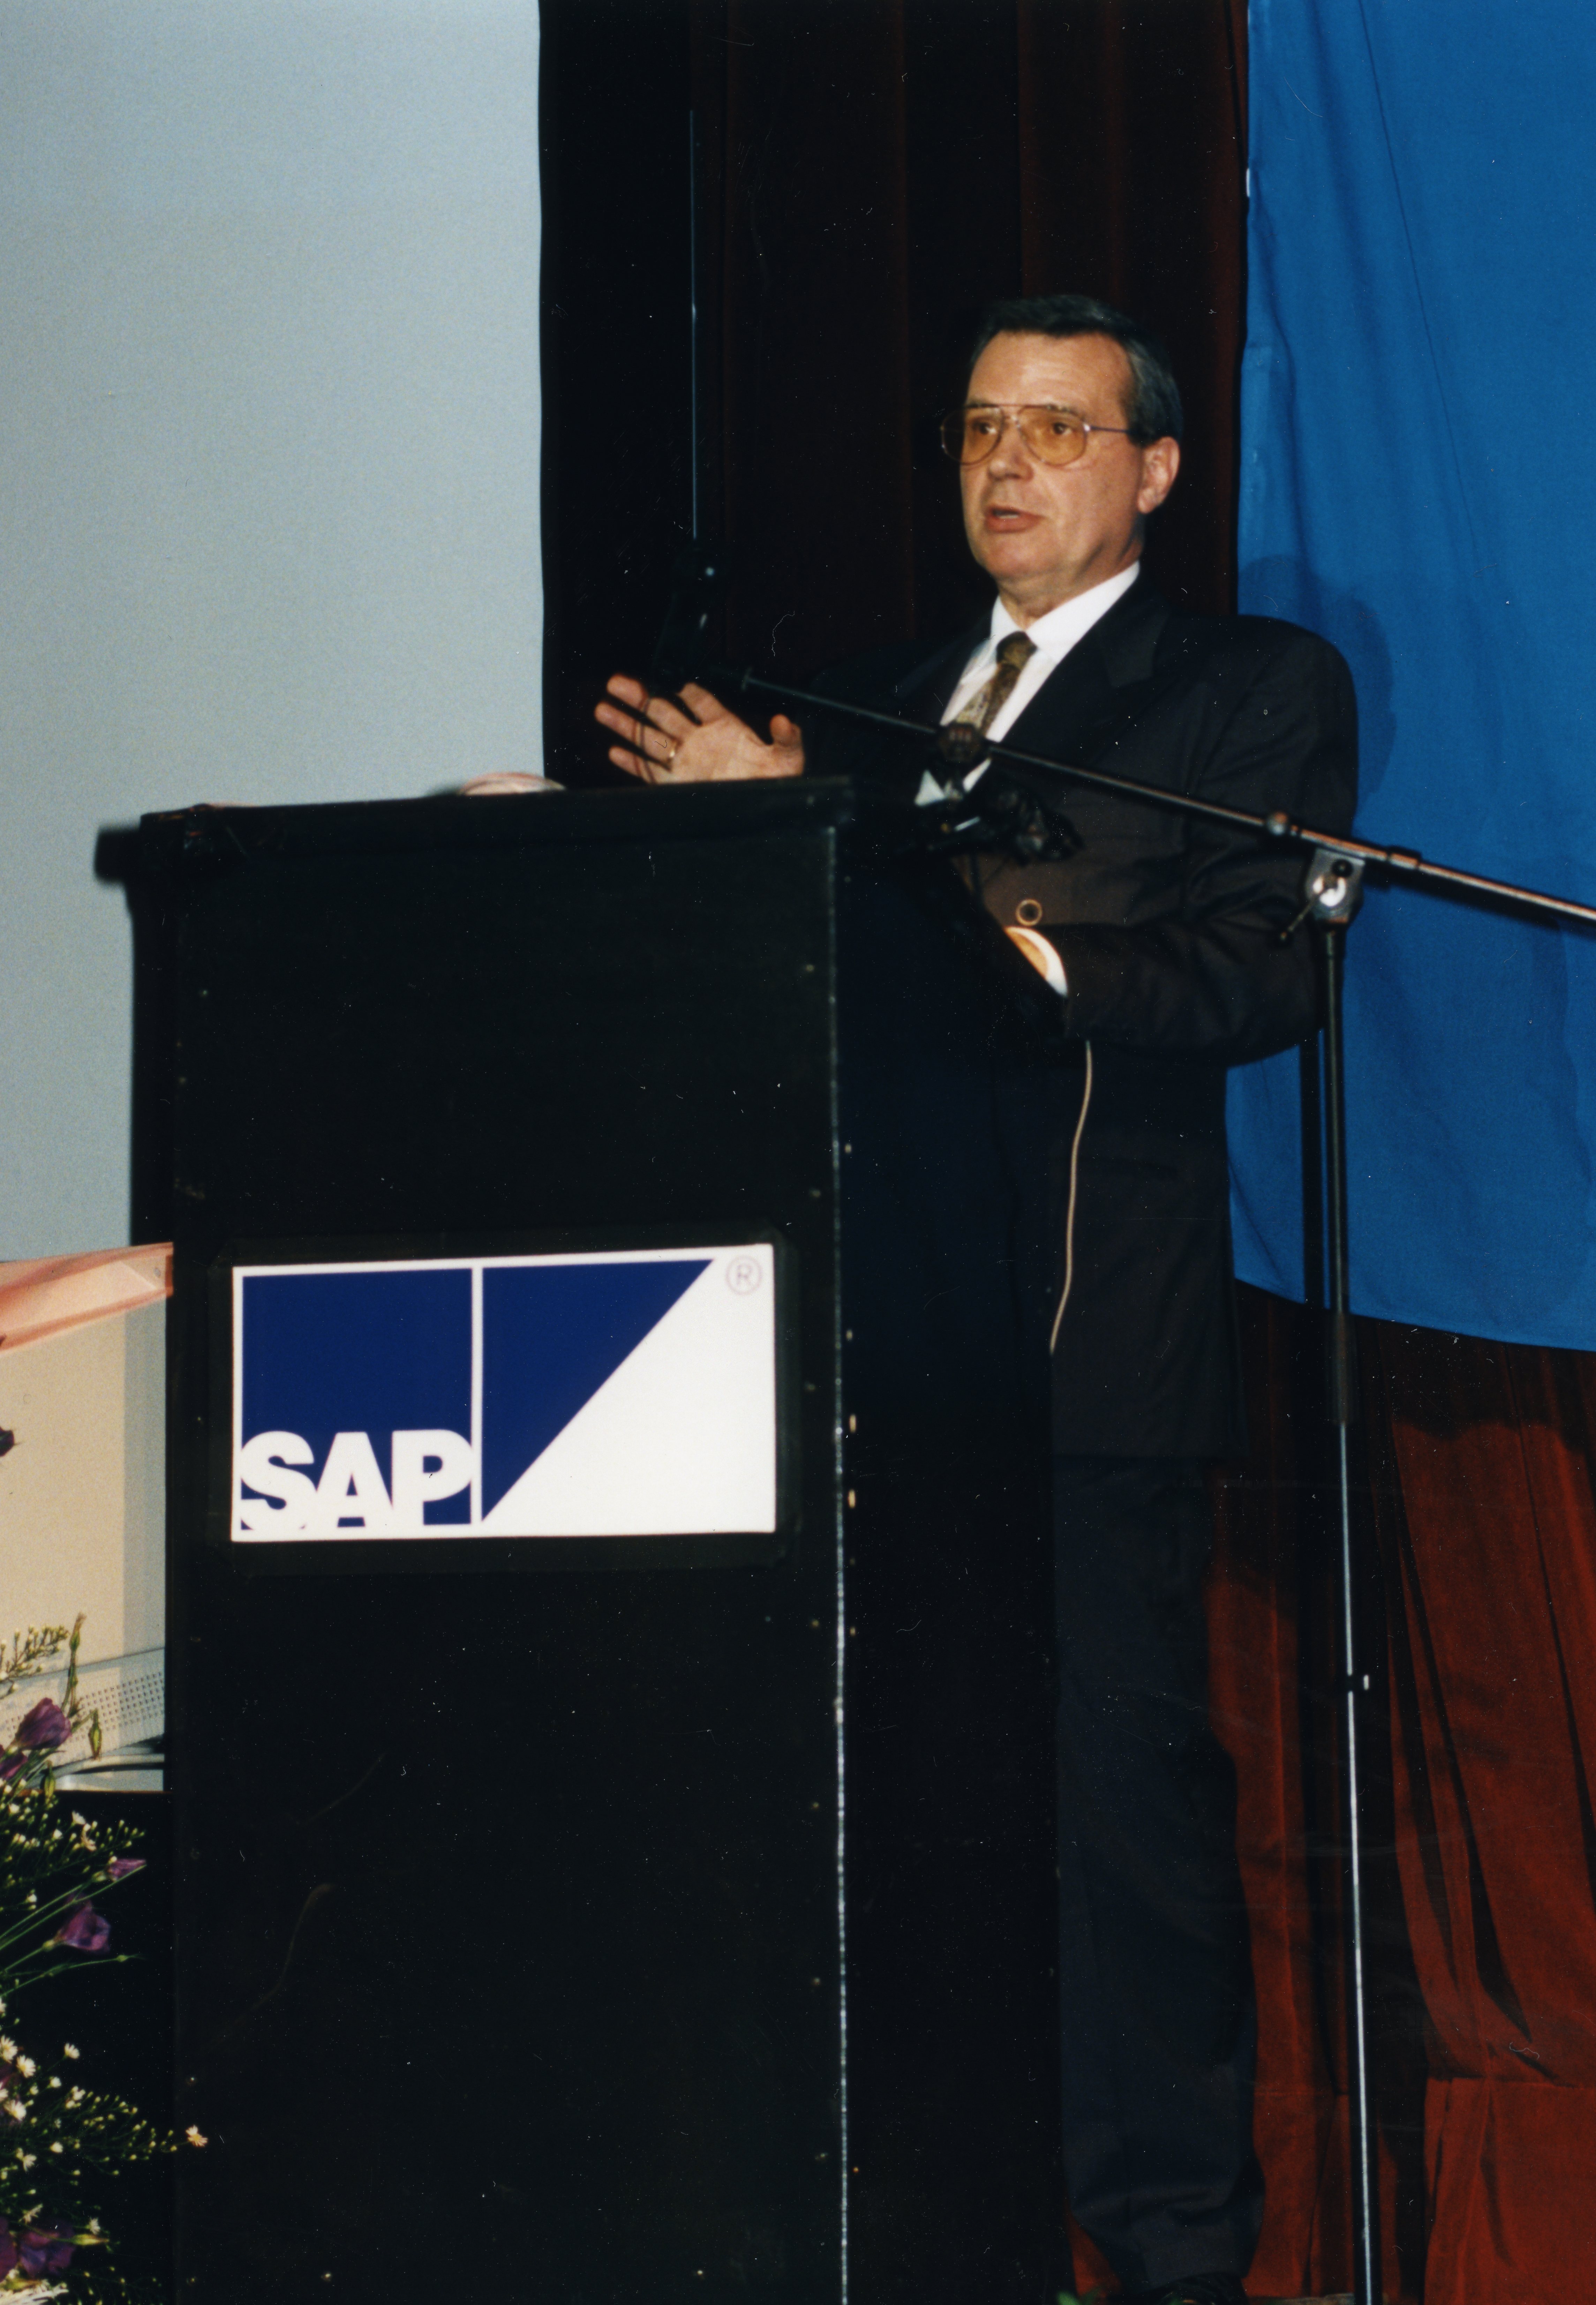 Peter Burgholzer vom ersten SAP-Kunden im Ausland, der Nettingsdorfer Papierfabrik.